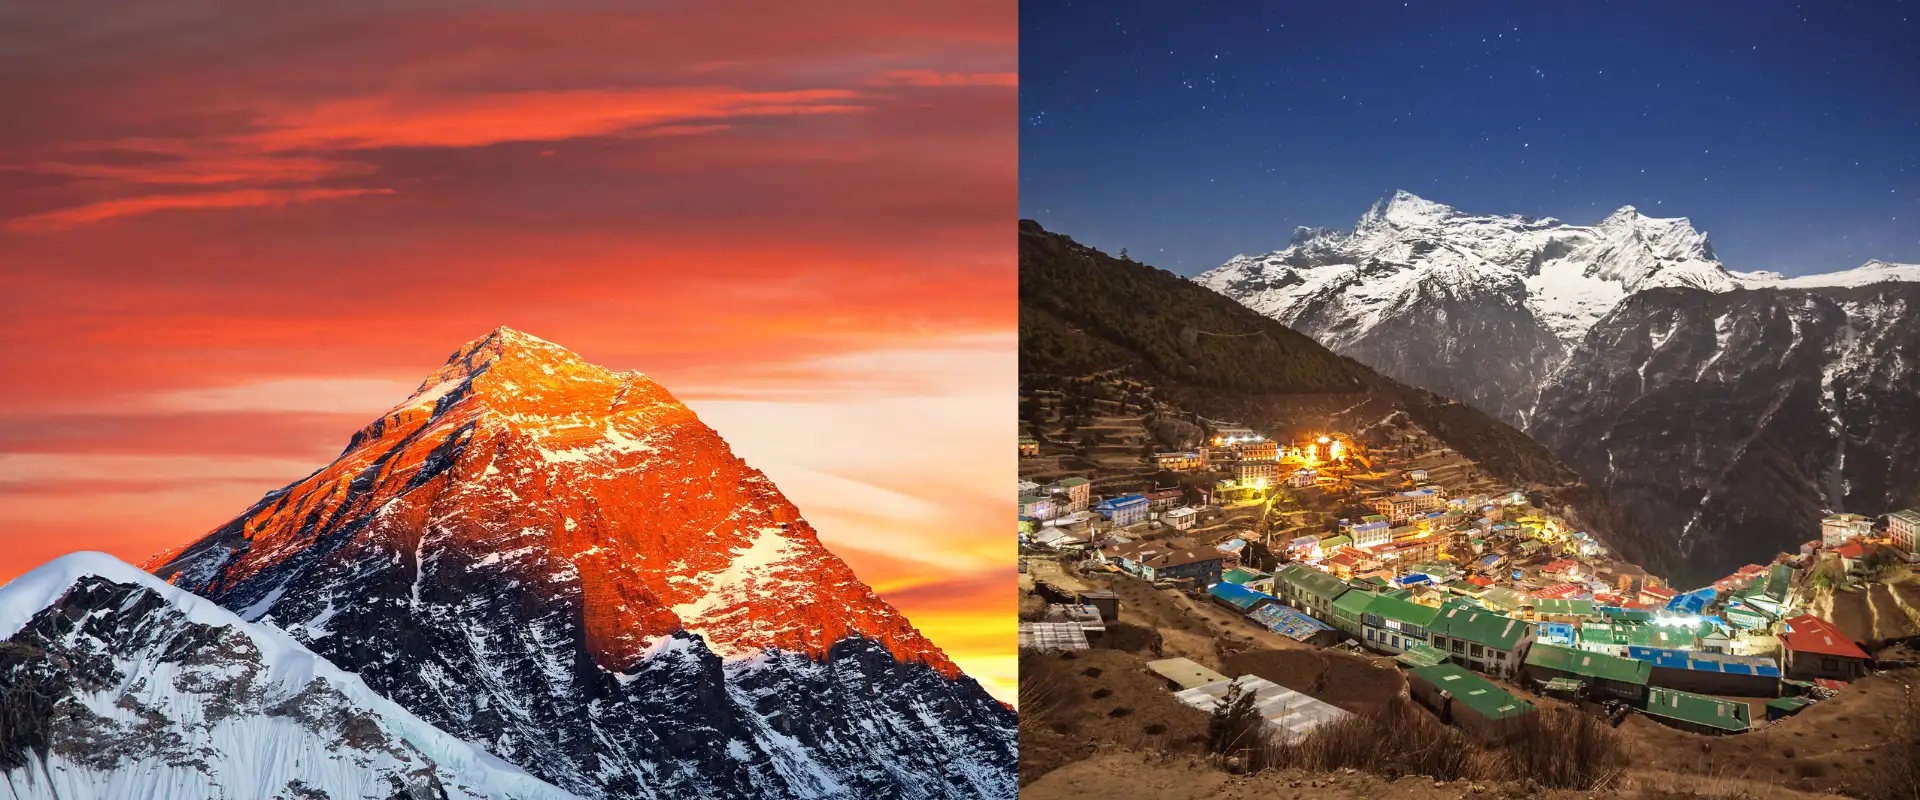 Jiri to Everest Base Camp Trek - Expert Advice by EBC Trek Guide